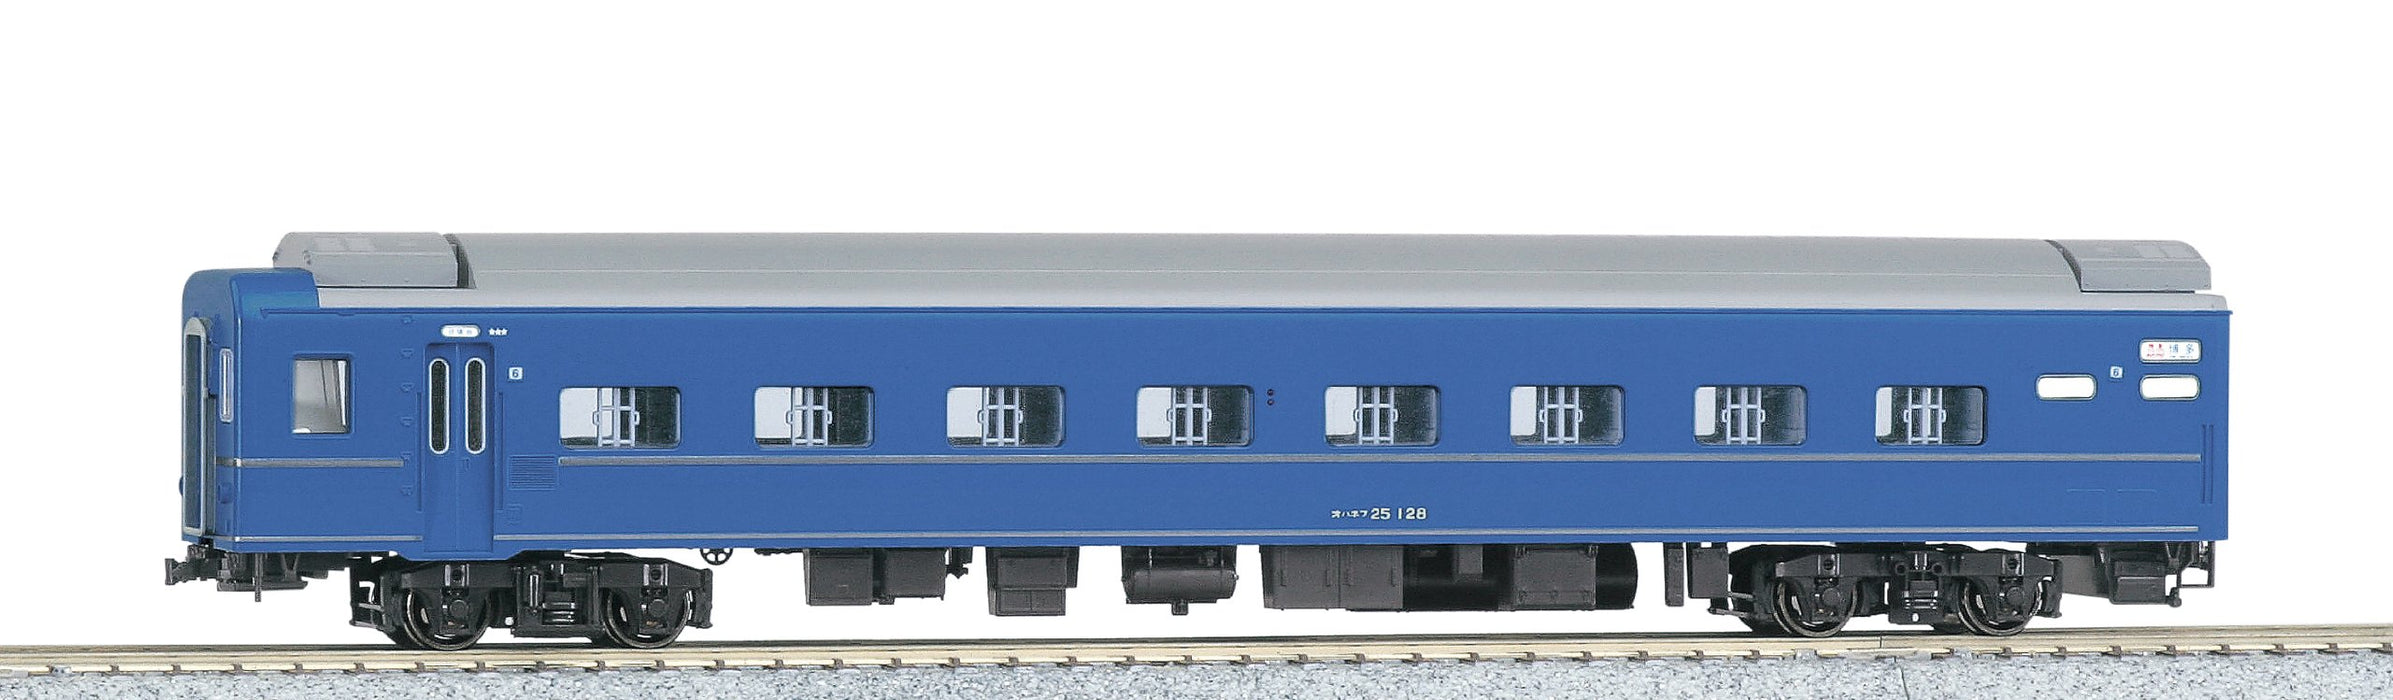 Kato Railway Model Passenger Car Ho Gauge Ohanefu 25 100 Series 1-535